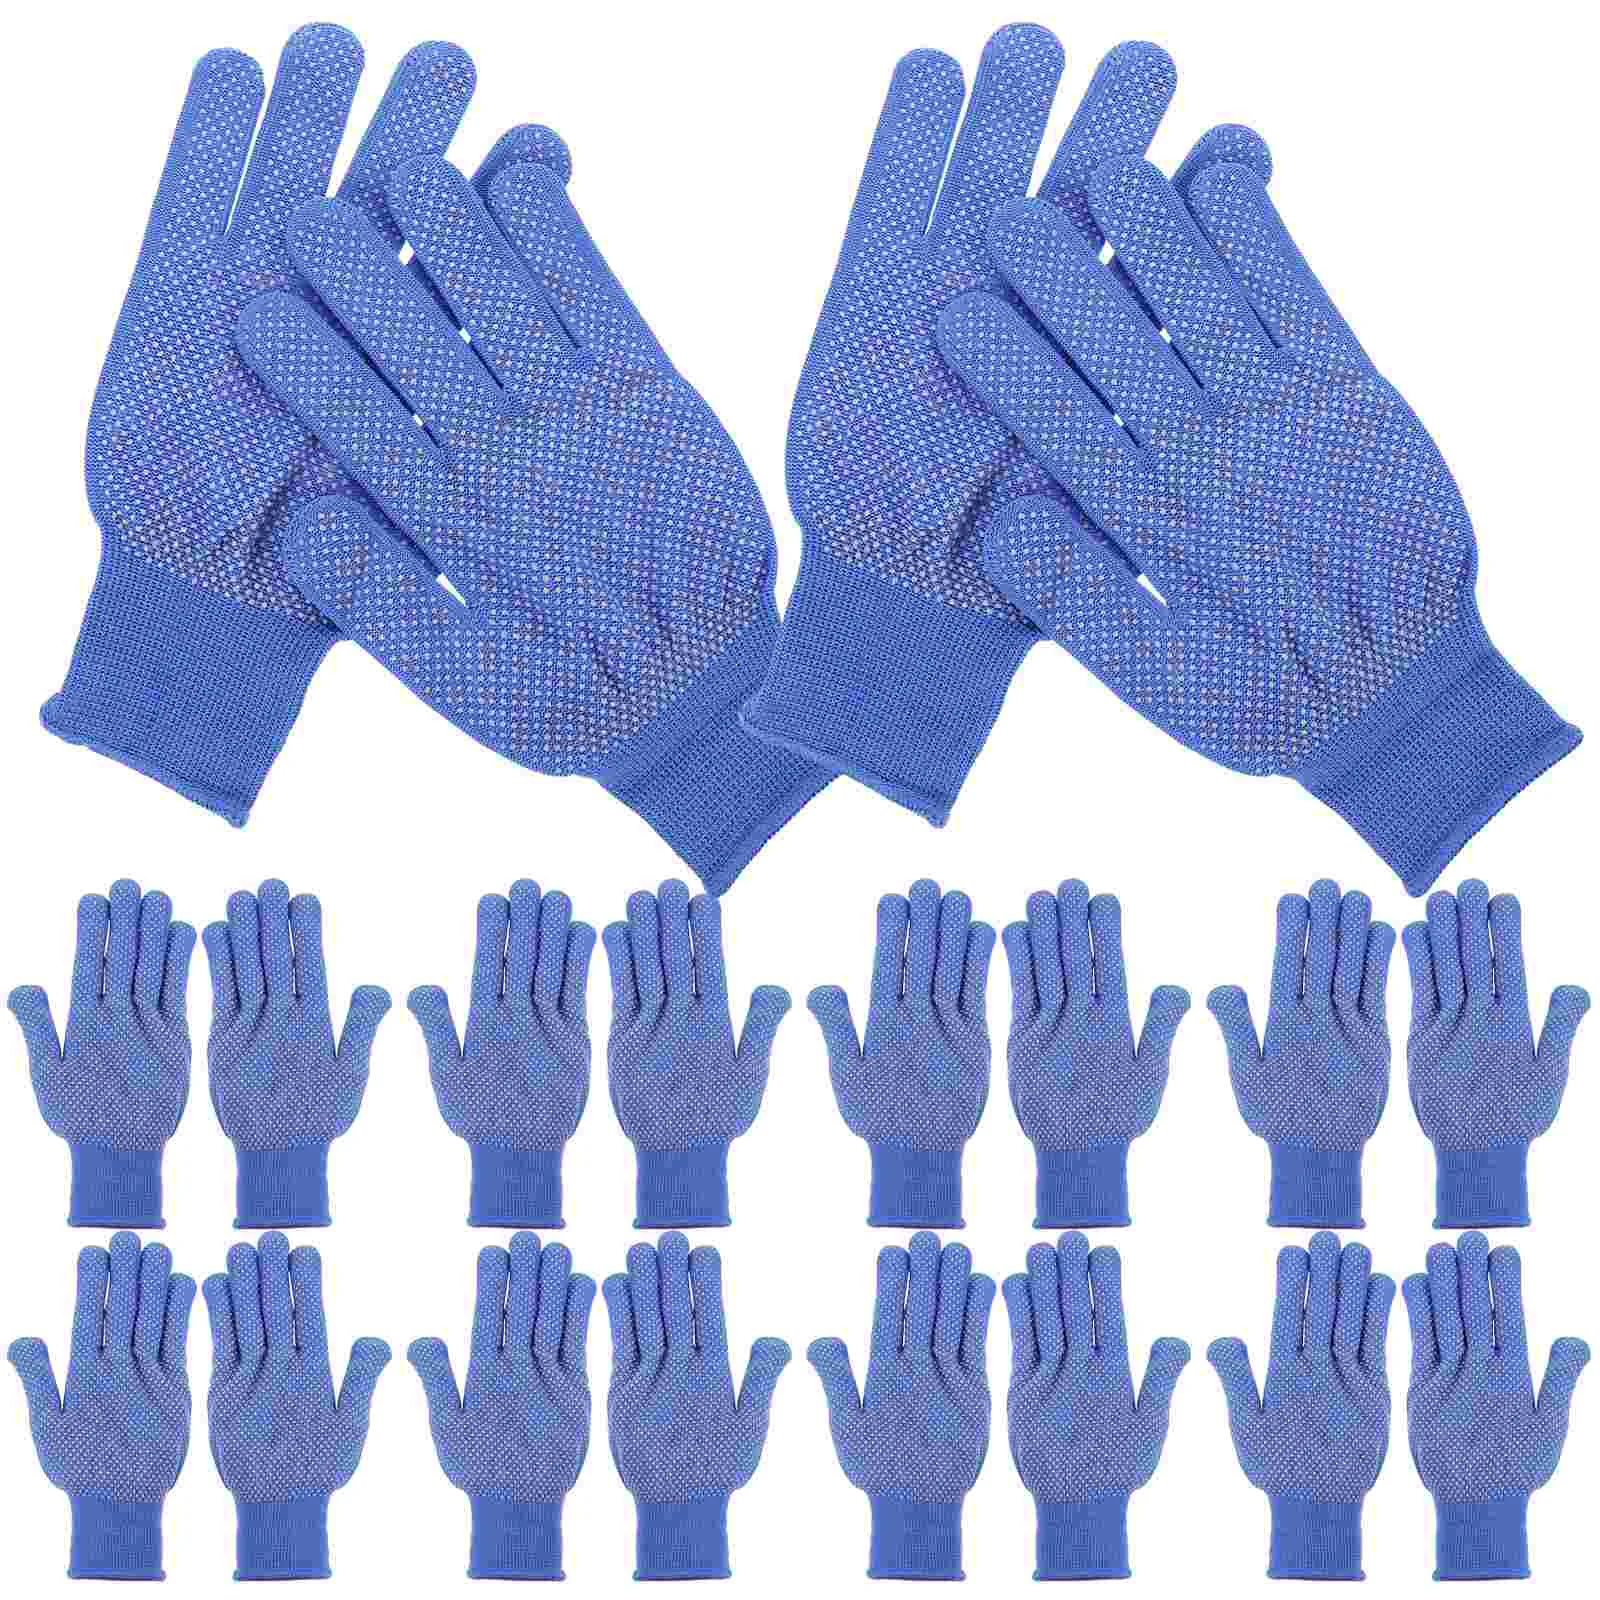 

10 Pairs of Outdoor Working Gloves Anti-slip Mitten Safety Gardening Gloves Work Gloves